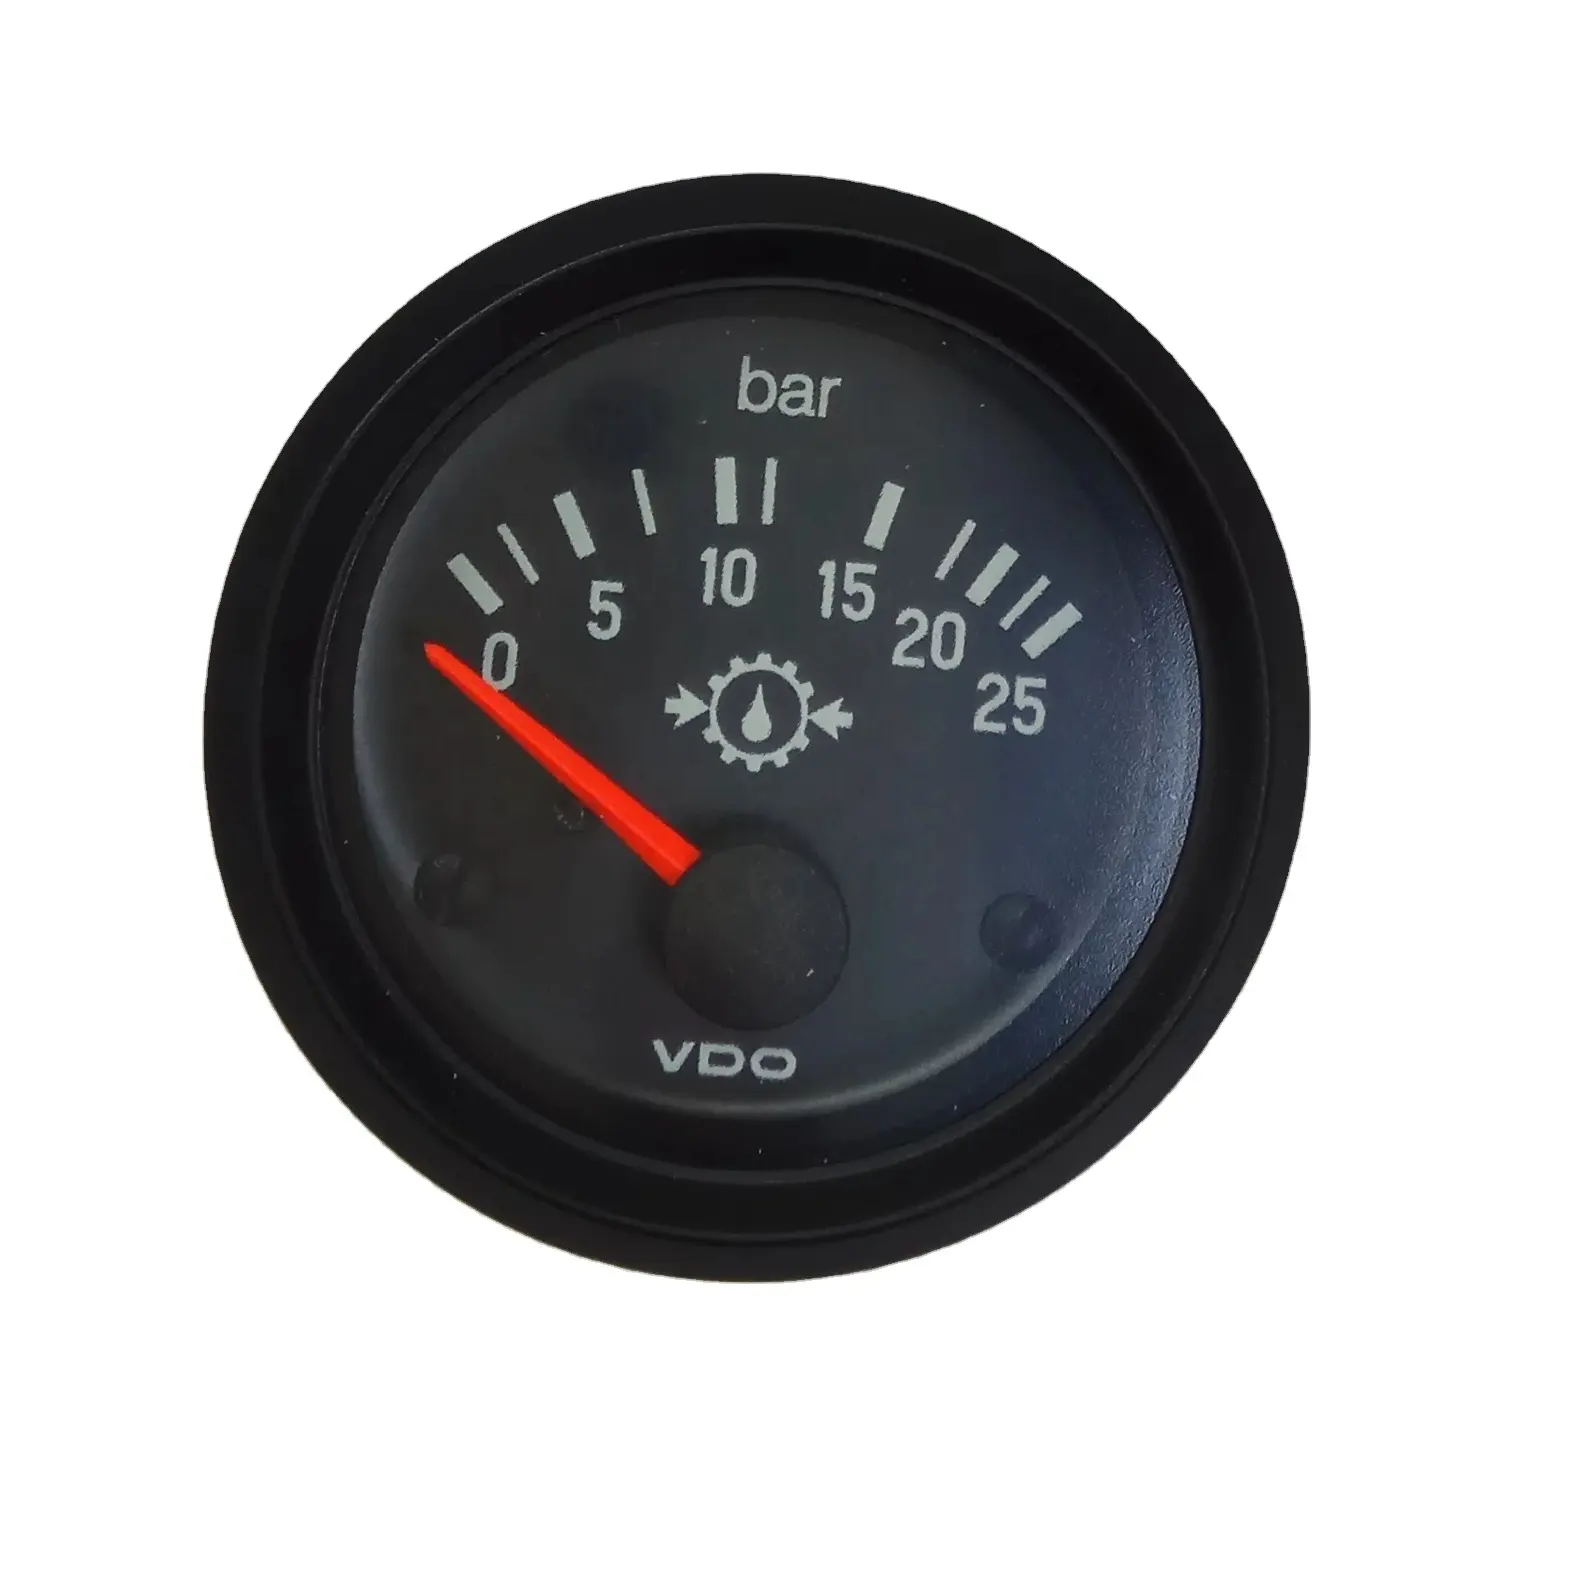 Genuine VDO gauge 350040005 OIL pressure gauge 350-040-005 0-25BAR 24V 52MM